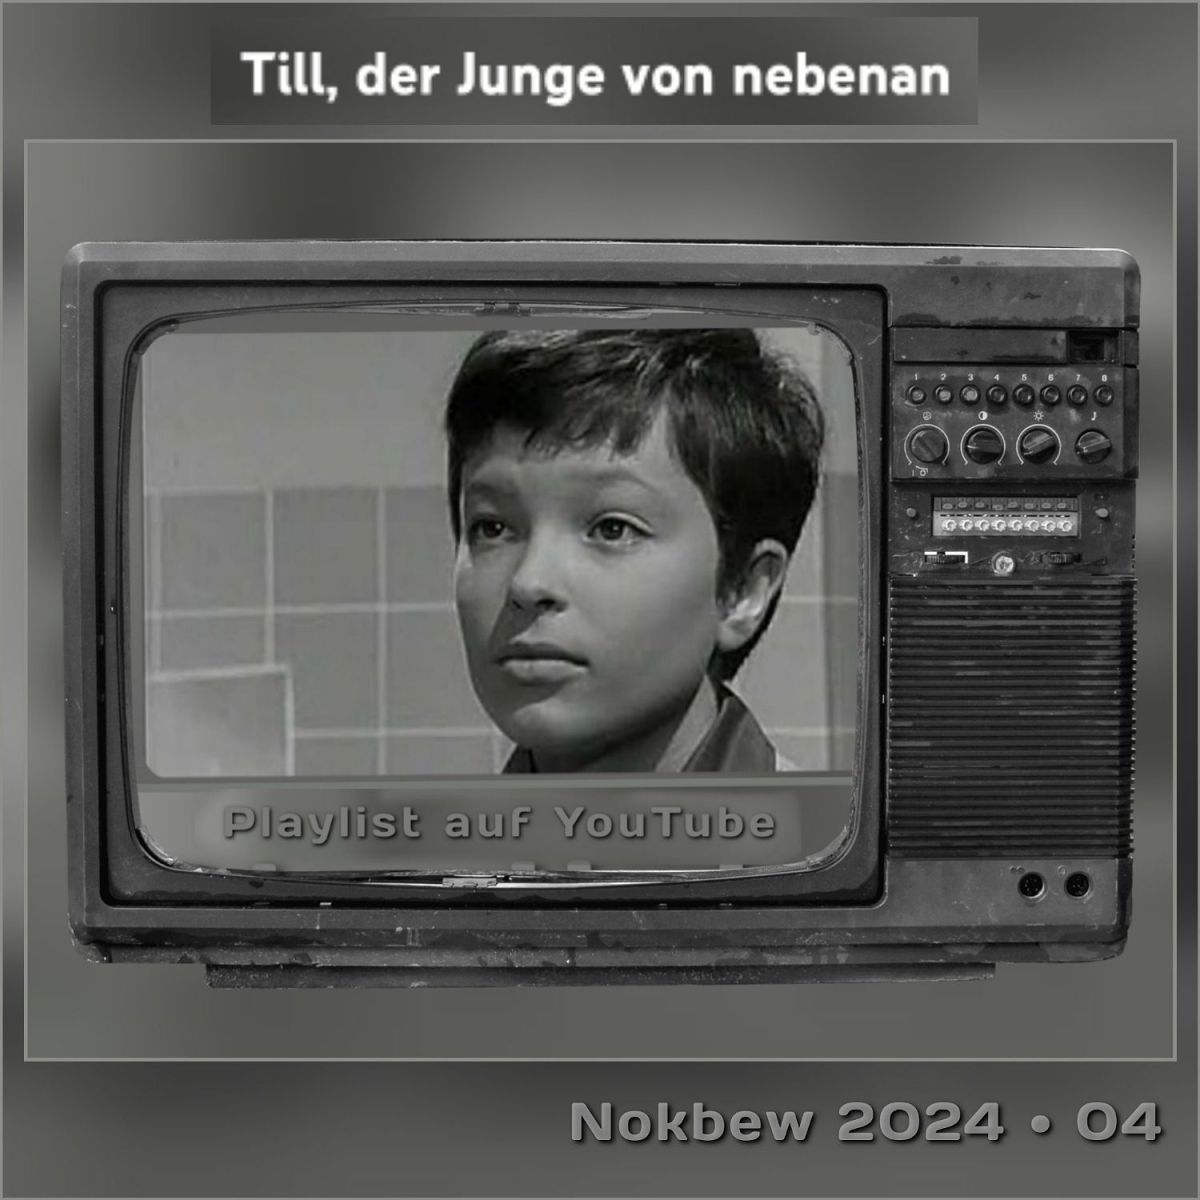 Filmtipp auf Nokbew’s Blog: Deutsche TV – Fernsehserie aus den Sechzigern: Till, der Junge von nebenan